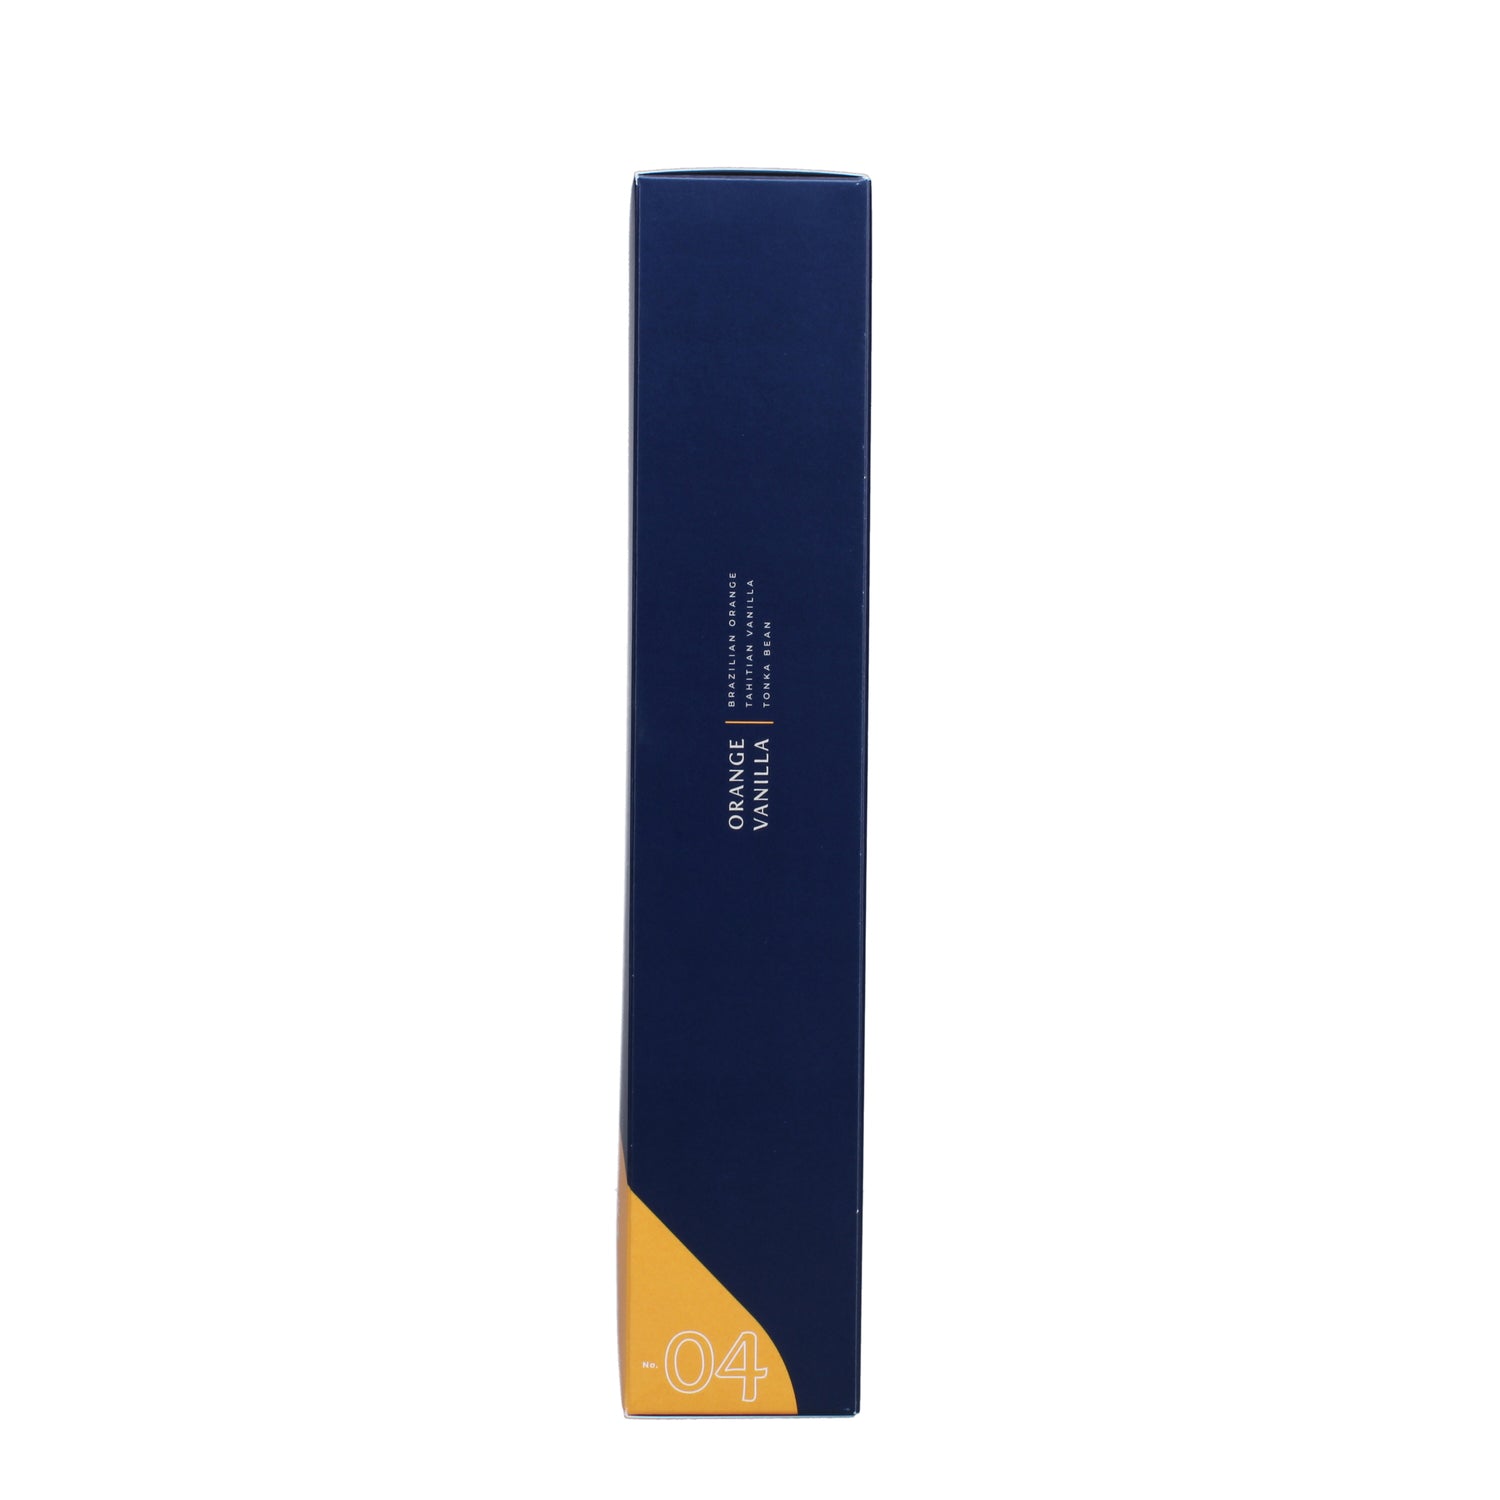 No. 04 Orange Vanilla 0.5 oz. Ultrasonic Diffuser Oil – Trapp Fragrances